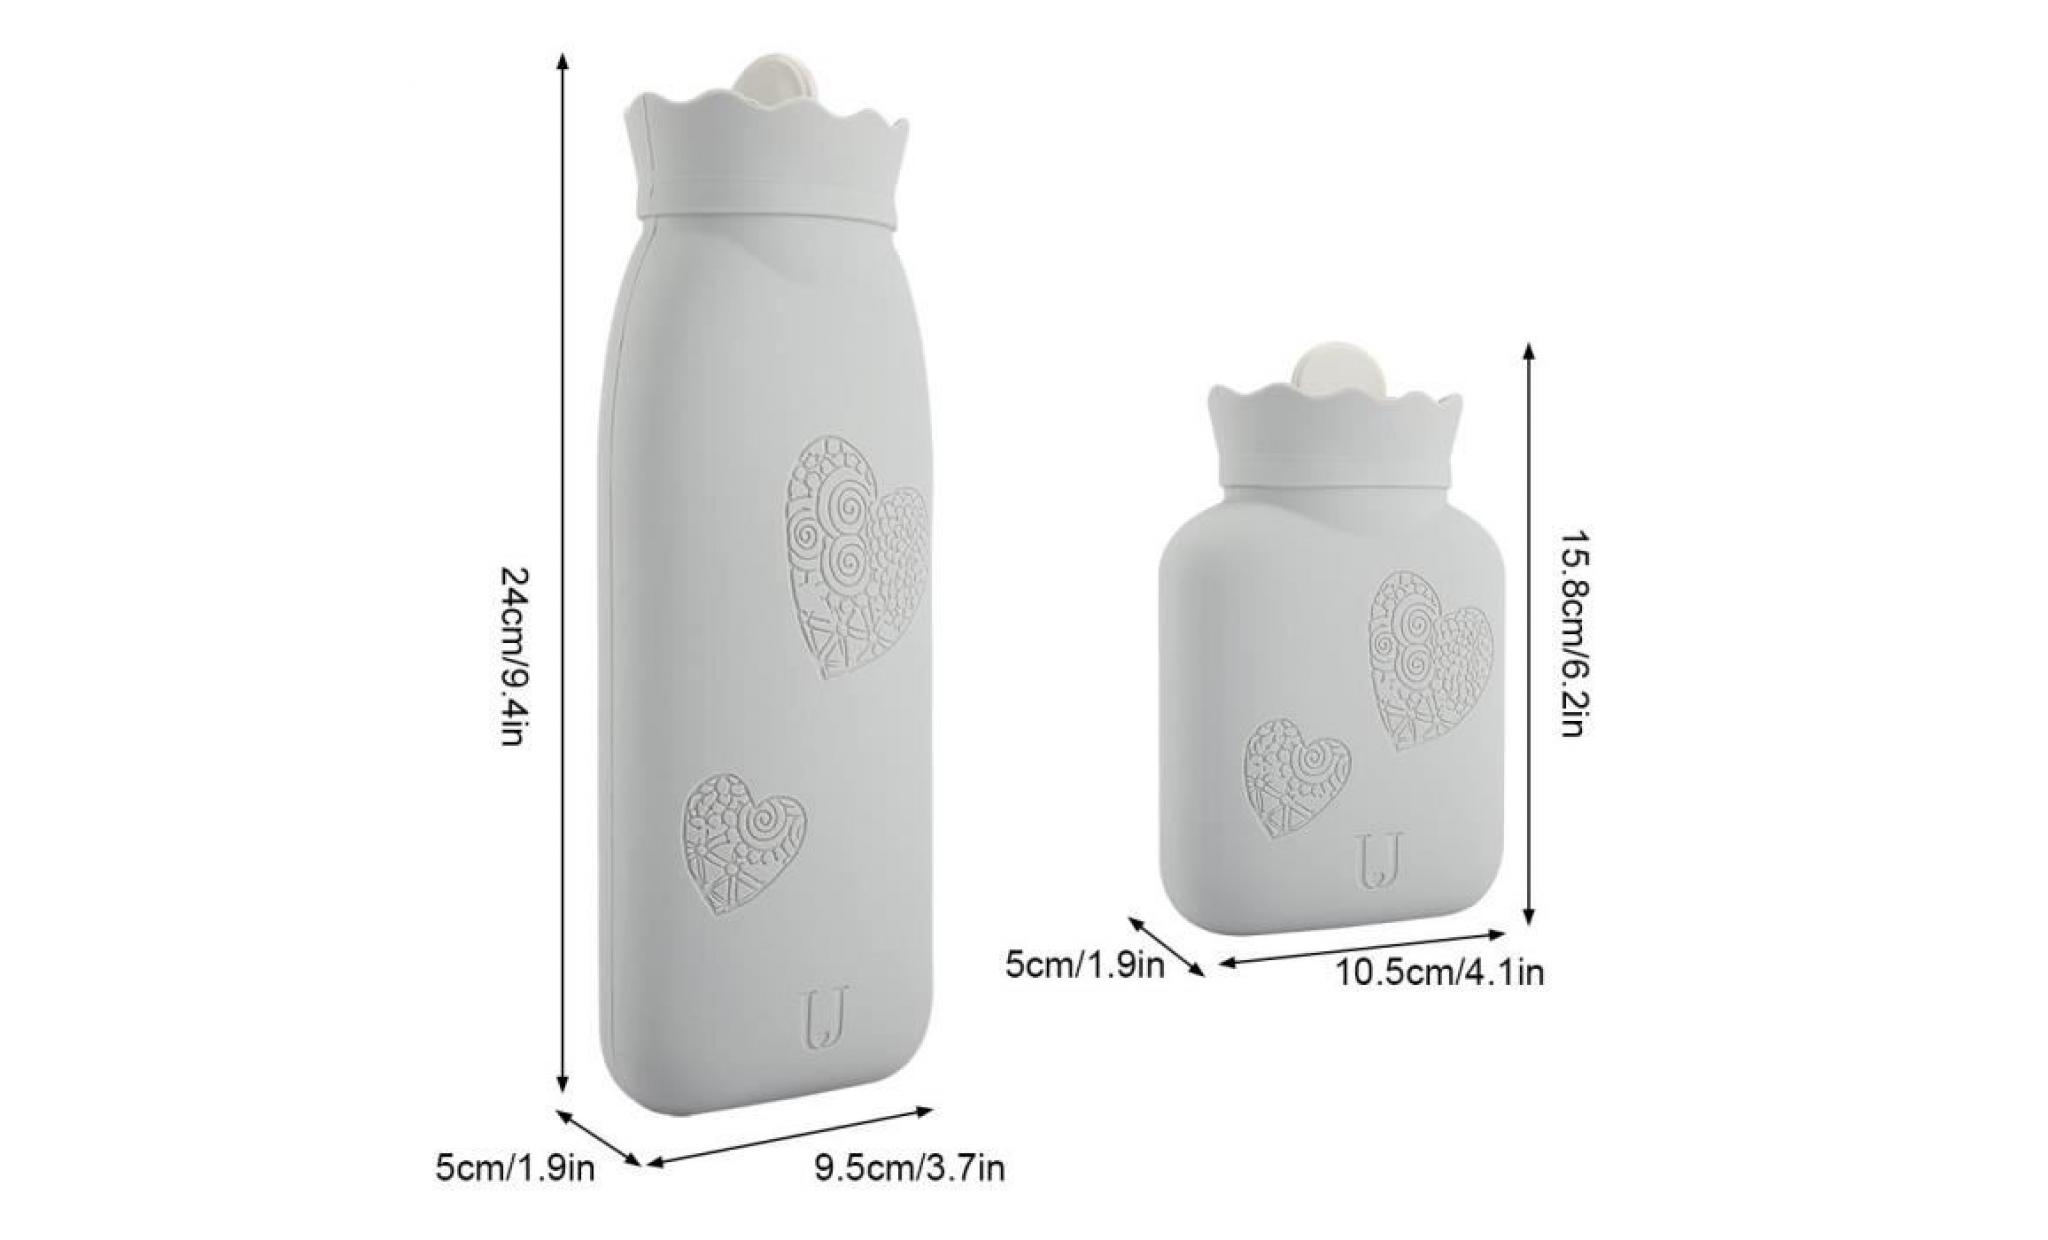 sac de chauffage pour micro ondes réchauffeur et refroidisseur environnemental de silicone (blanc l)  ohl pas cher